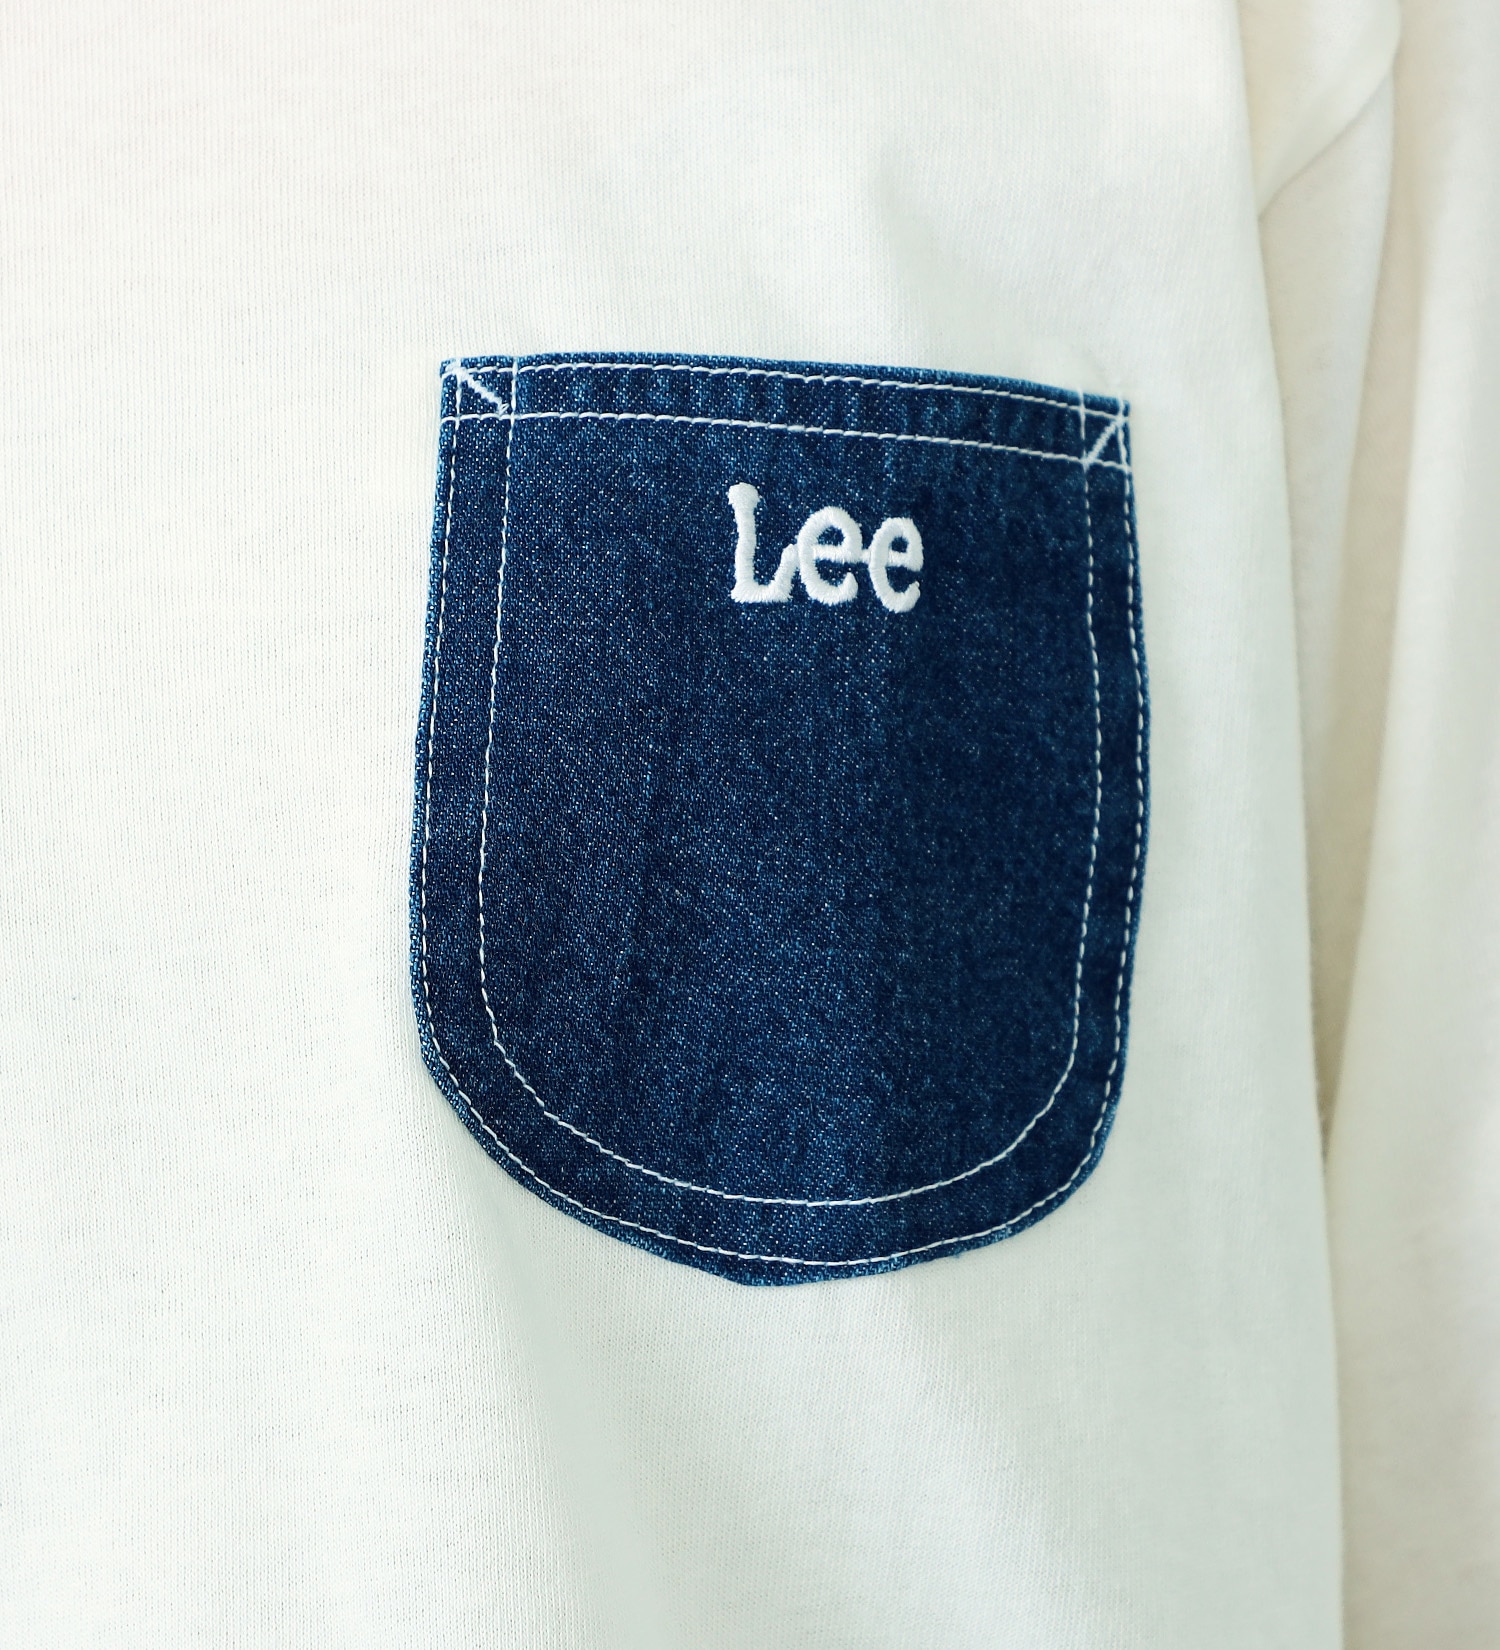 Lee(リー)のデニムポケット長袖Tシャツ|トップス/Tシャツ/カットソー/メンズ|インディゴブルー